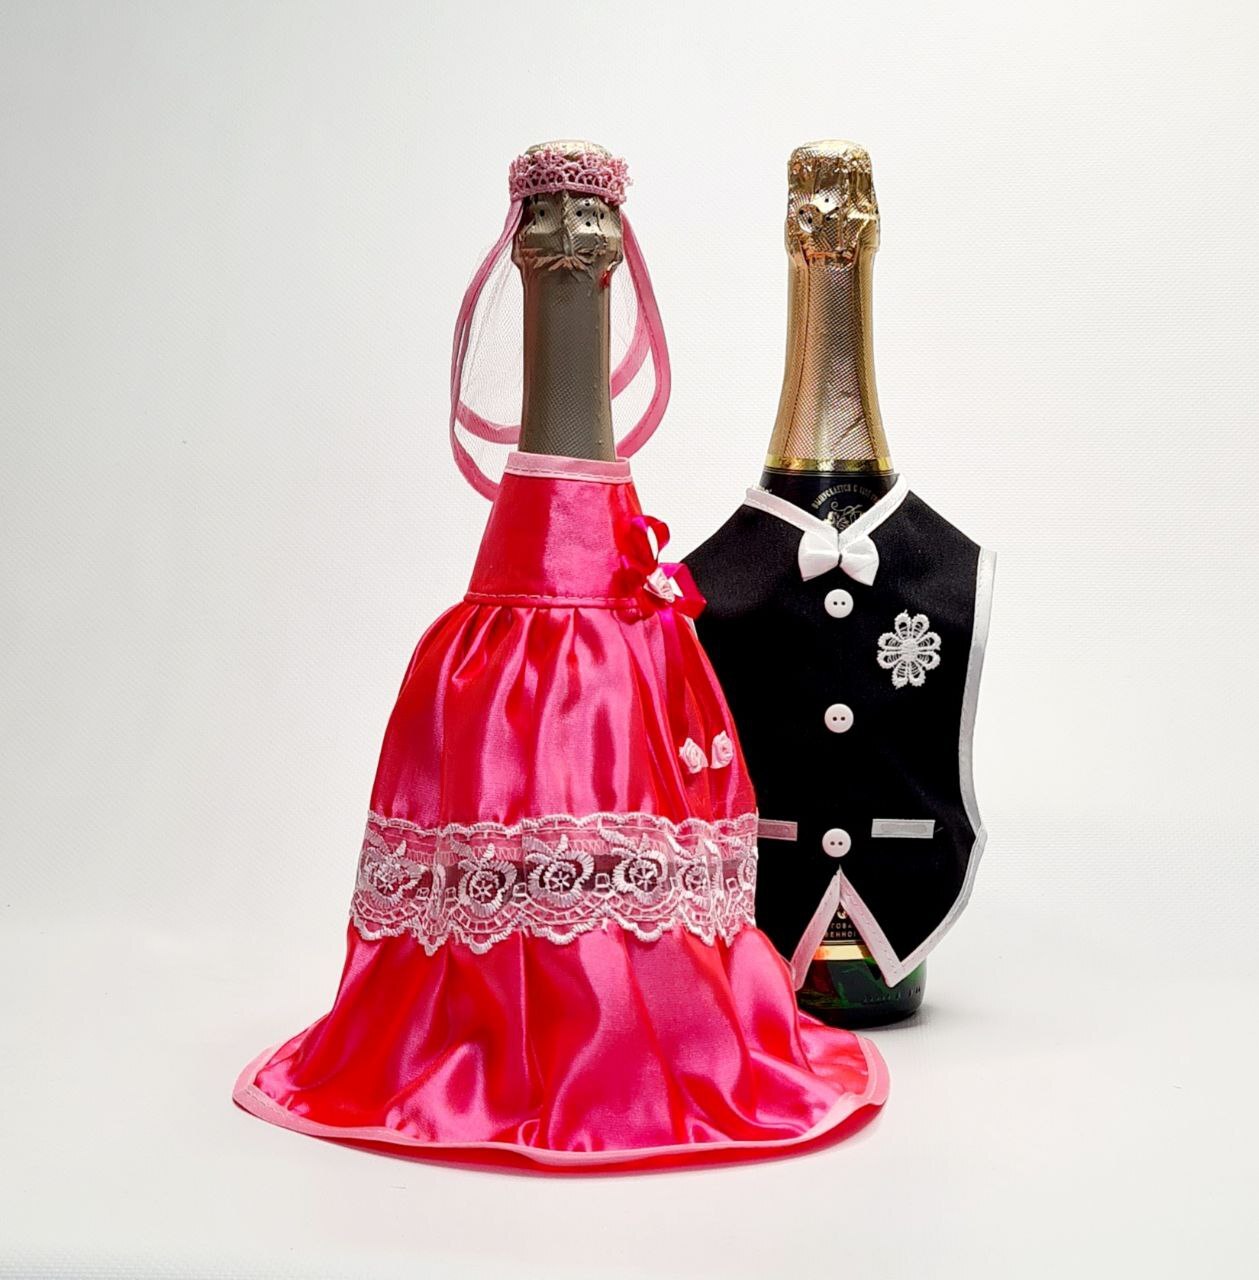 Оформление бутылок с инициалами молодоженов и датой свадьбы.